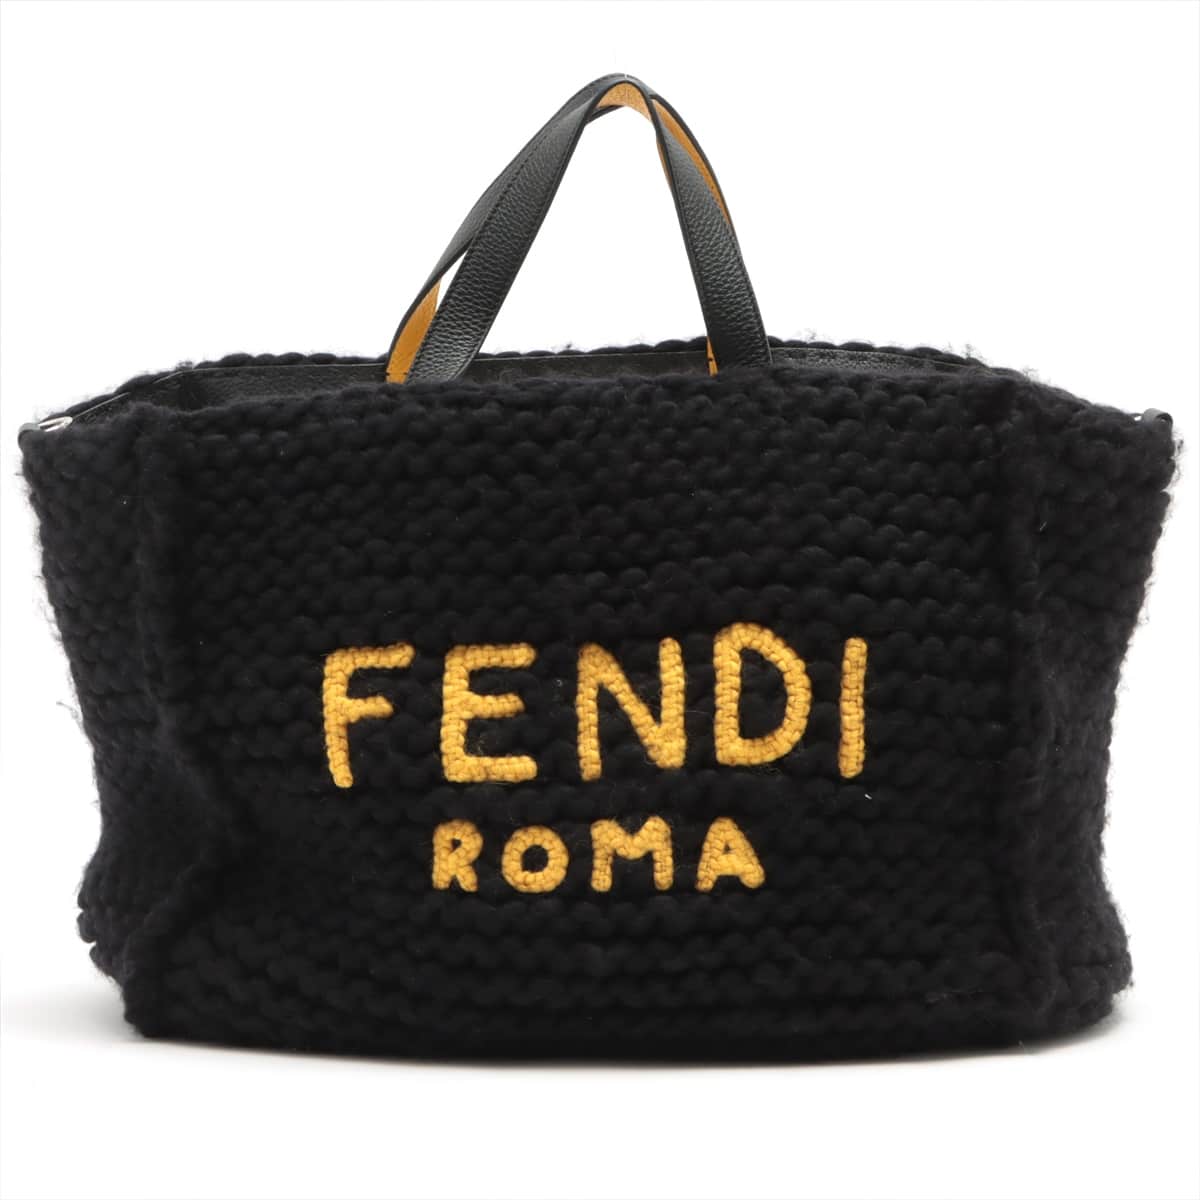 FENDI  ROMA・スーツショップ袋